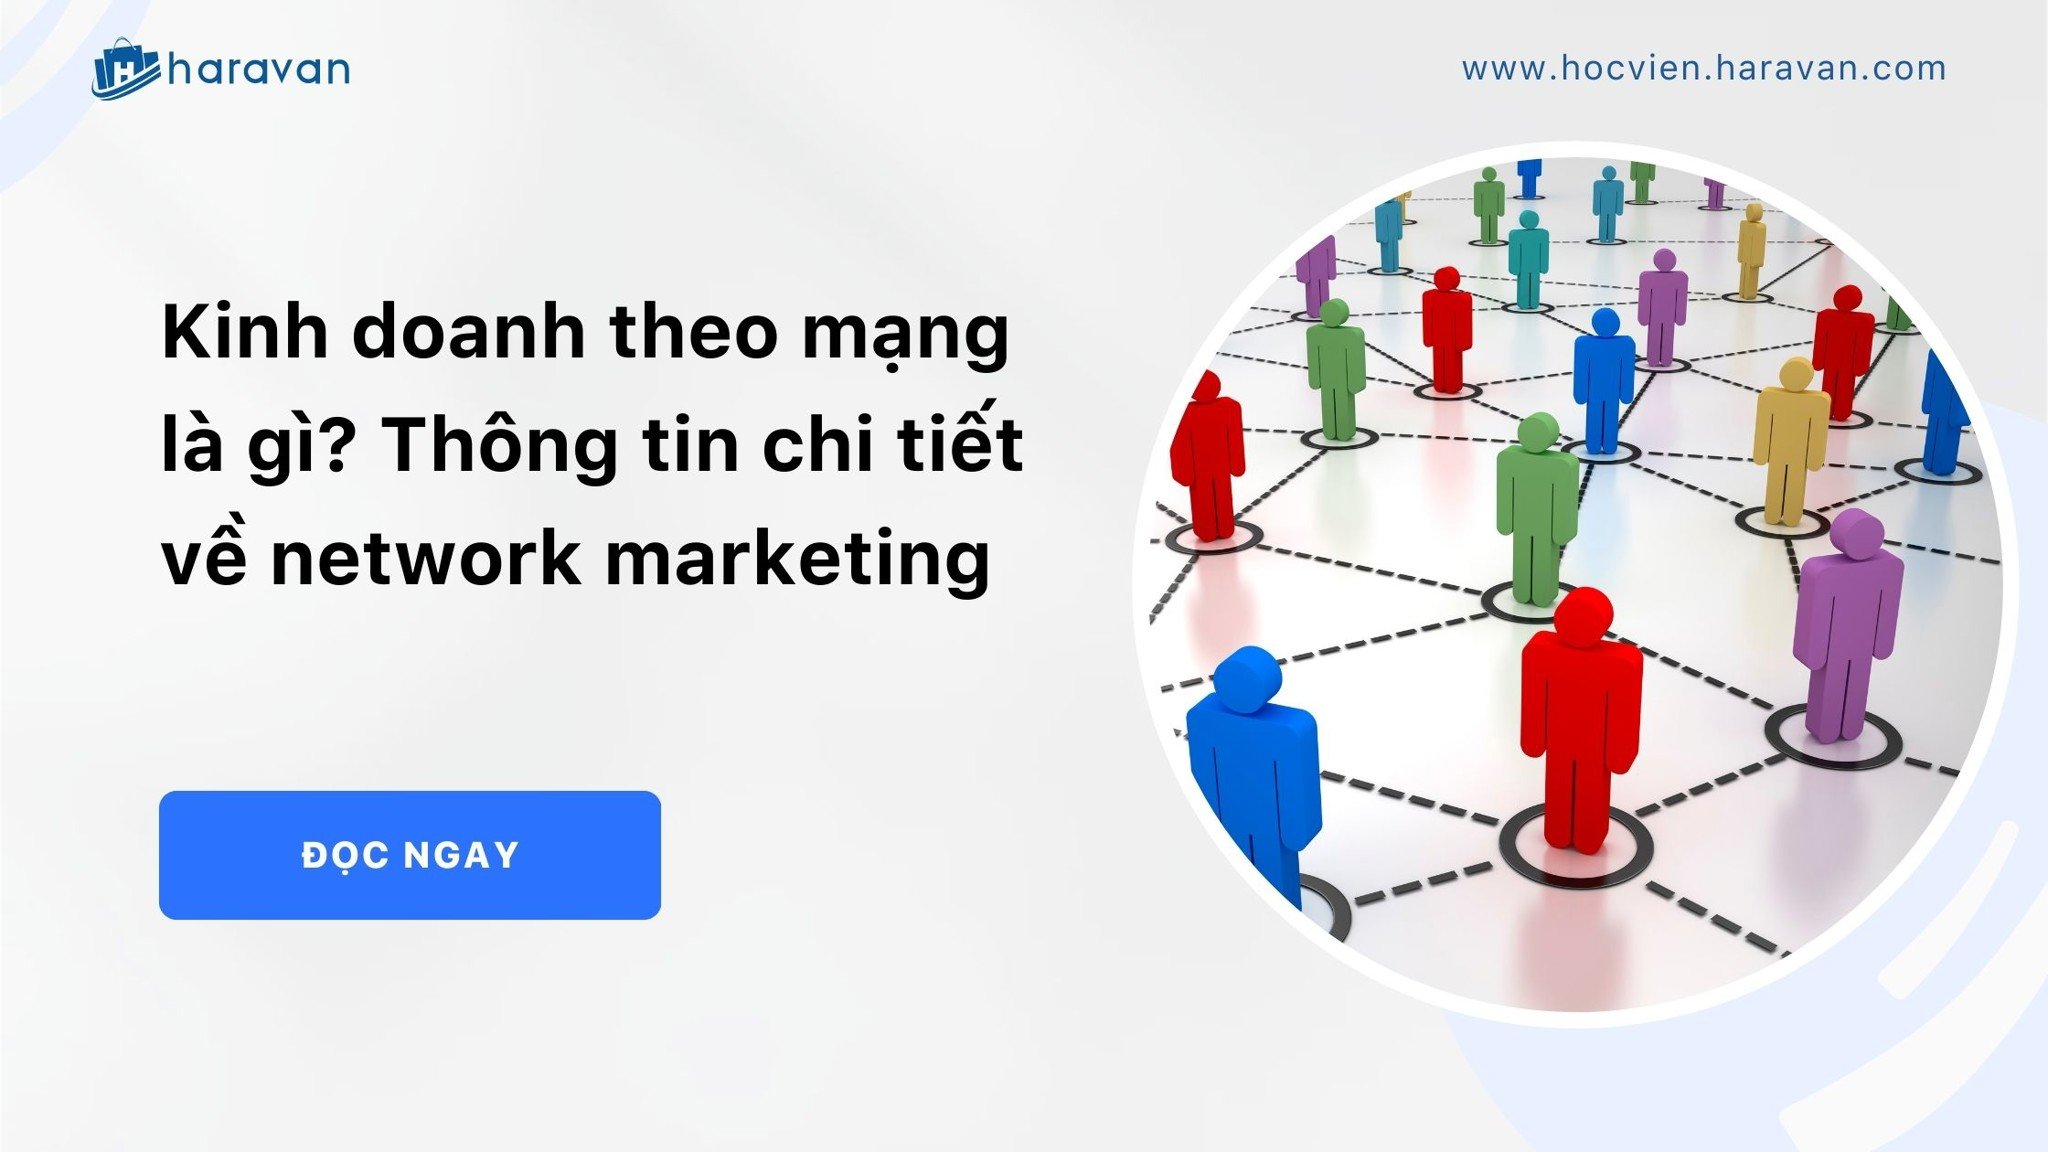 Kinh doanh theo mạng là gì? Thông tin chi tiết về network marketing